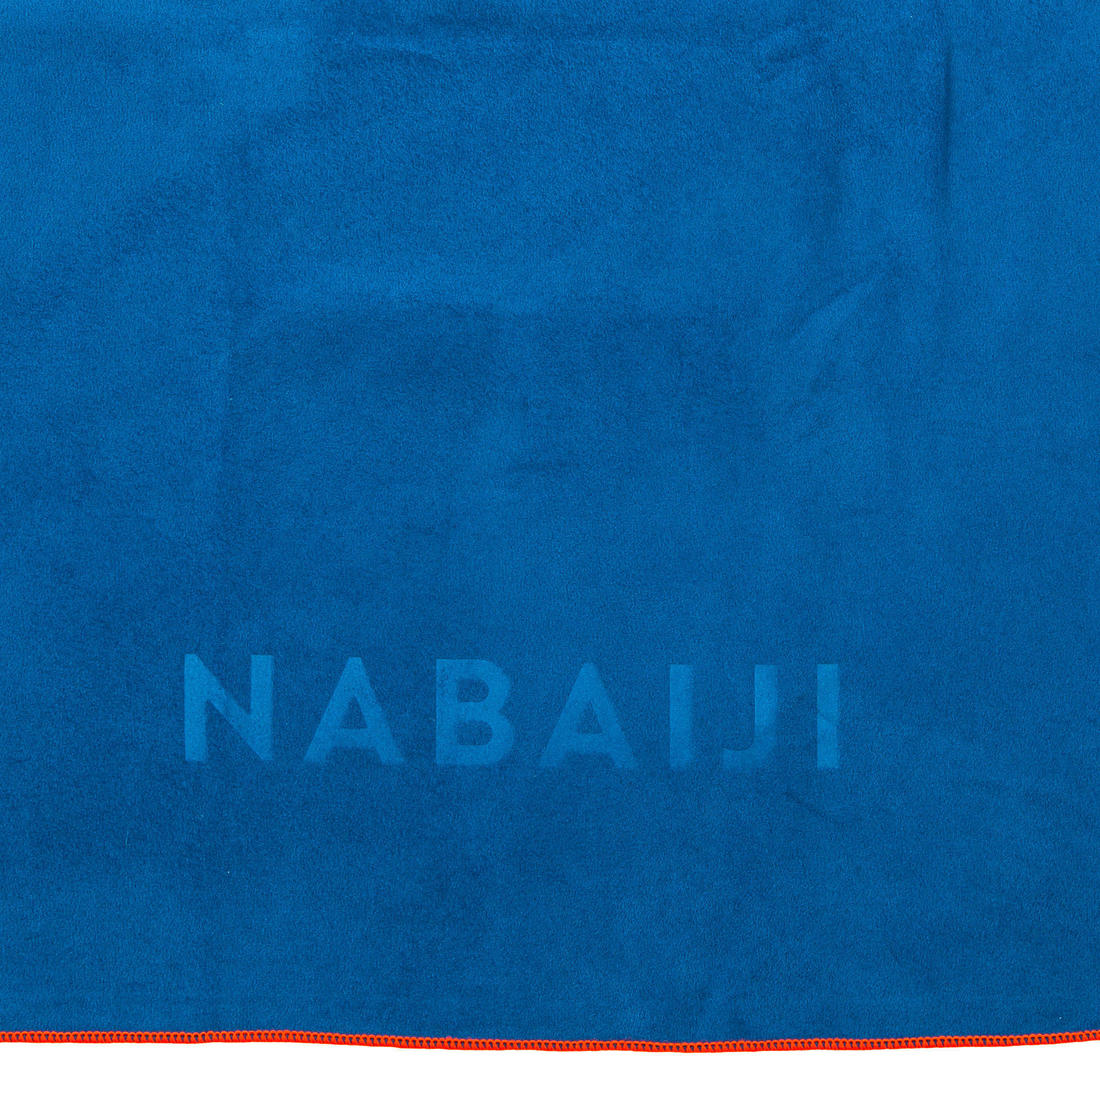 NABAIJI(ナバイジ) 水泳・プール マイクロファイバータオル ウルトラコンパクト XLサイズ 110×175cm